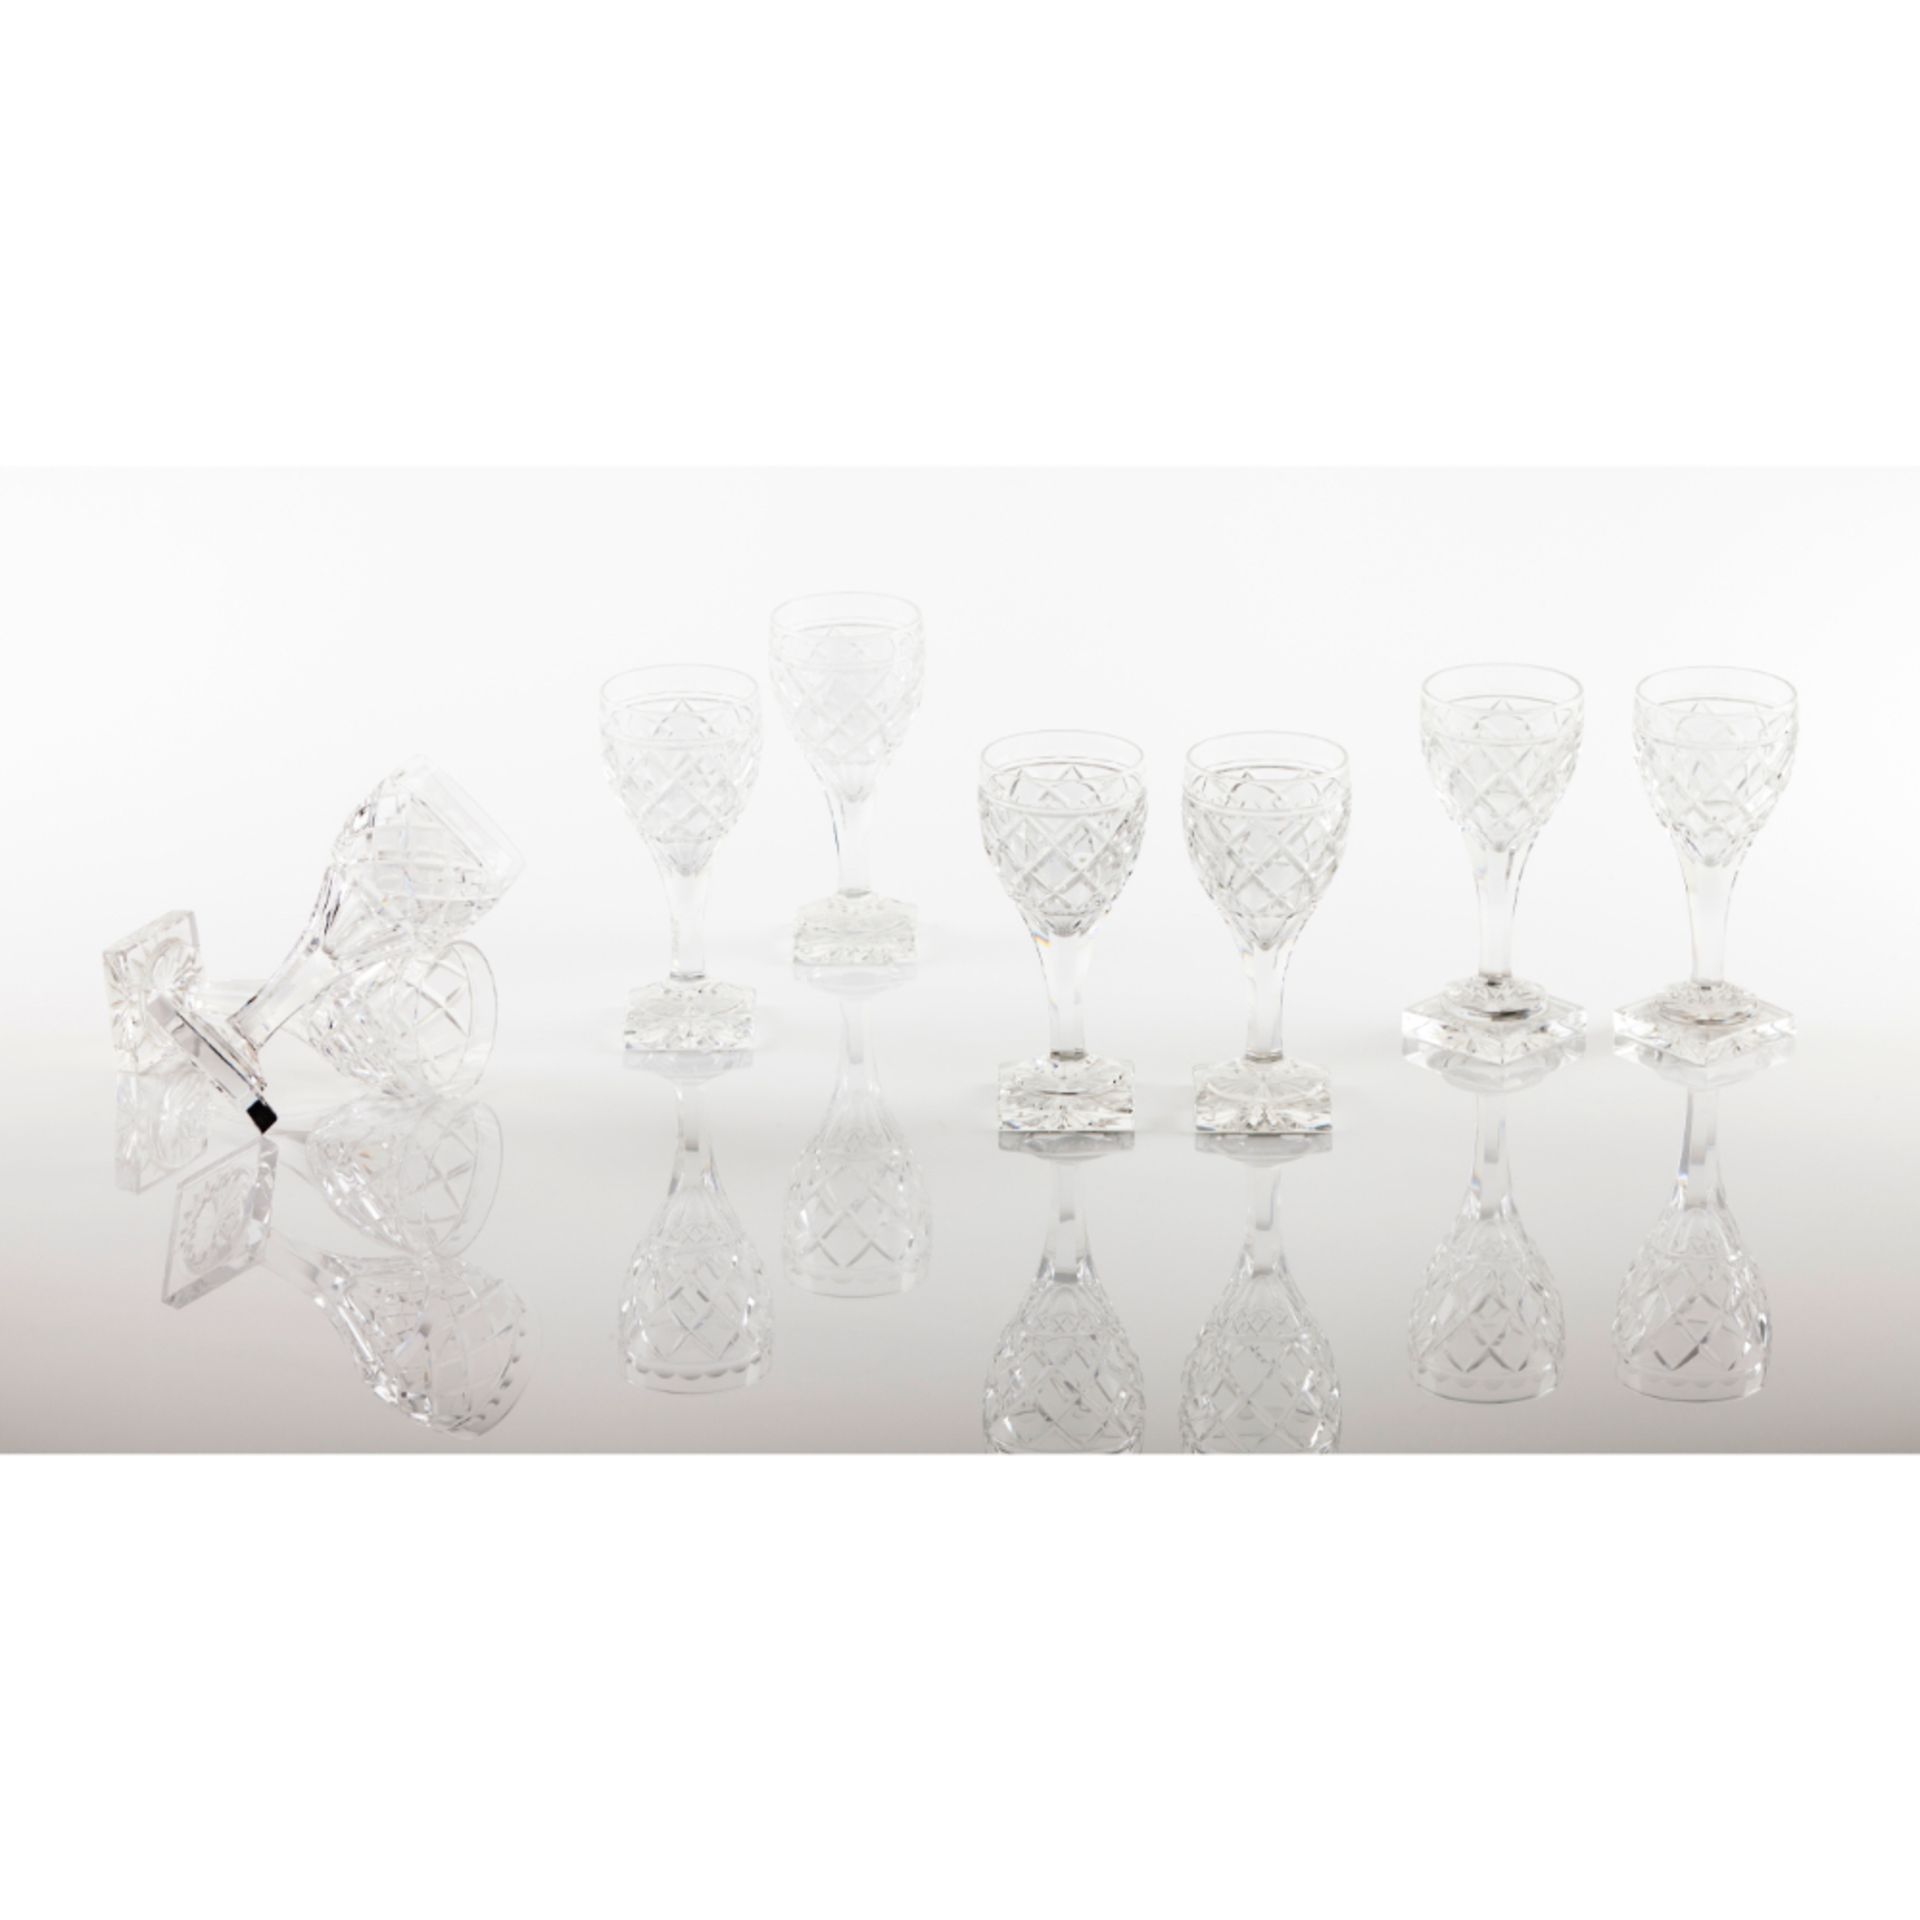 A set of 8 cut crystal Port glasses